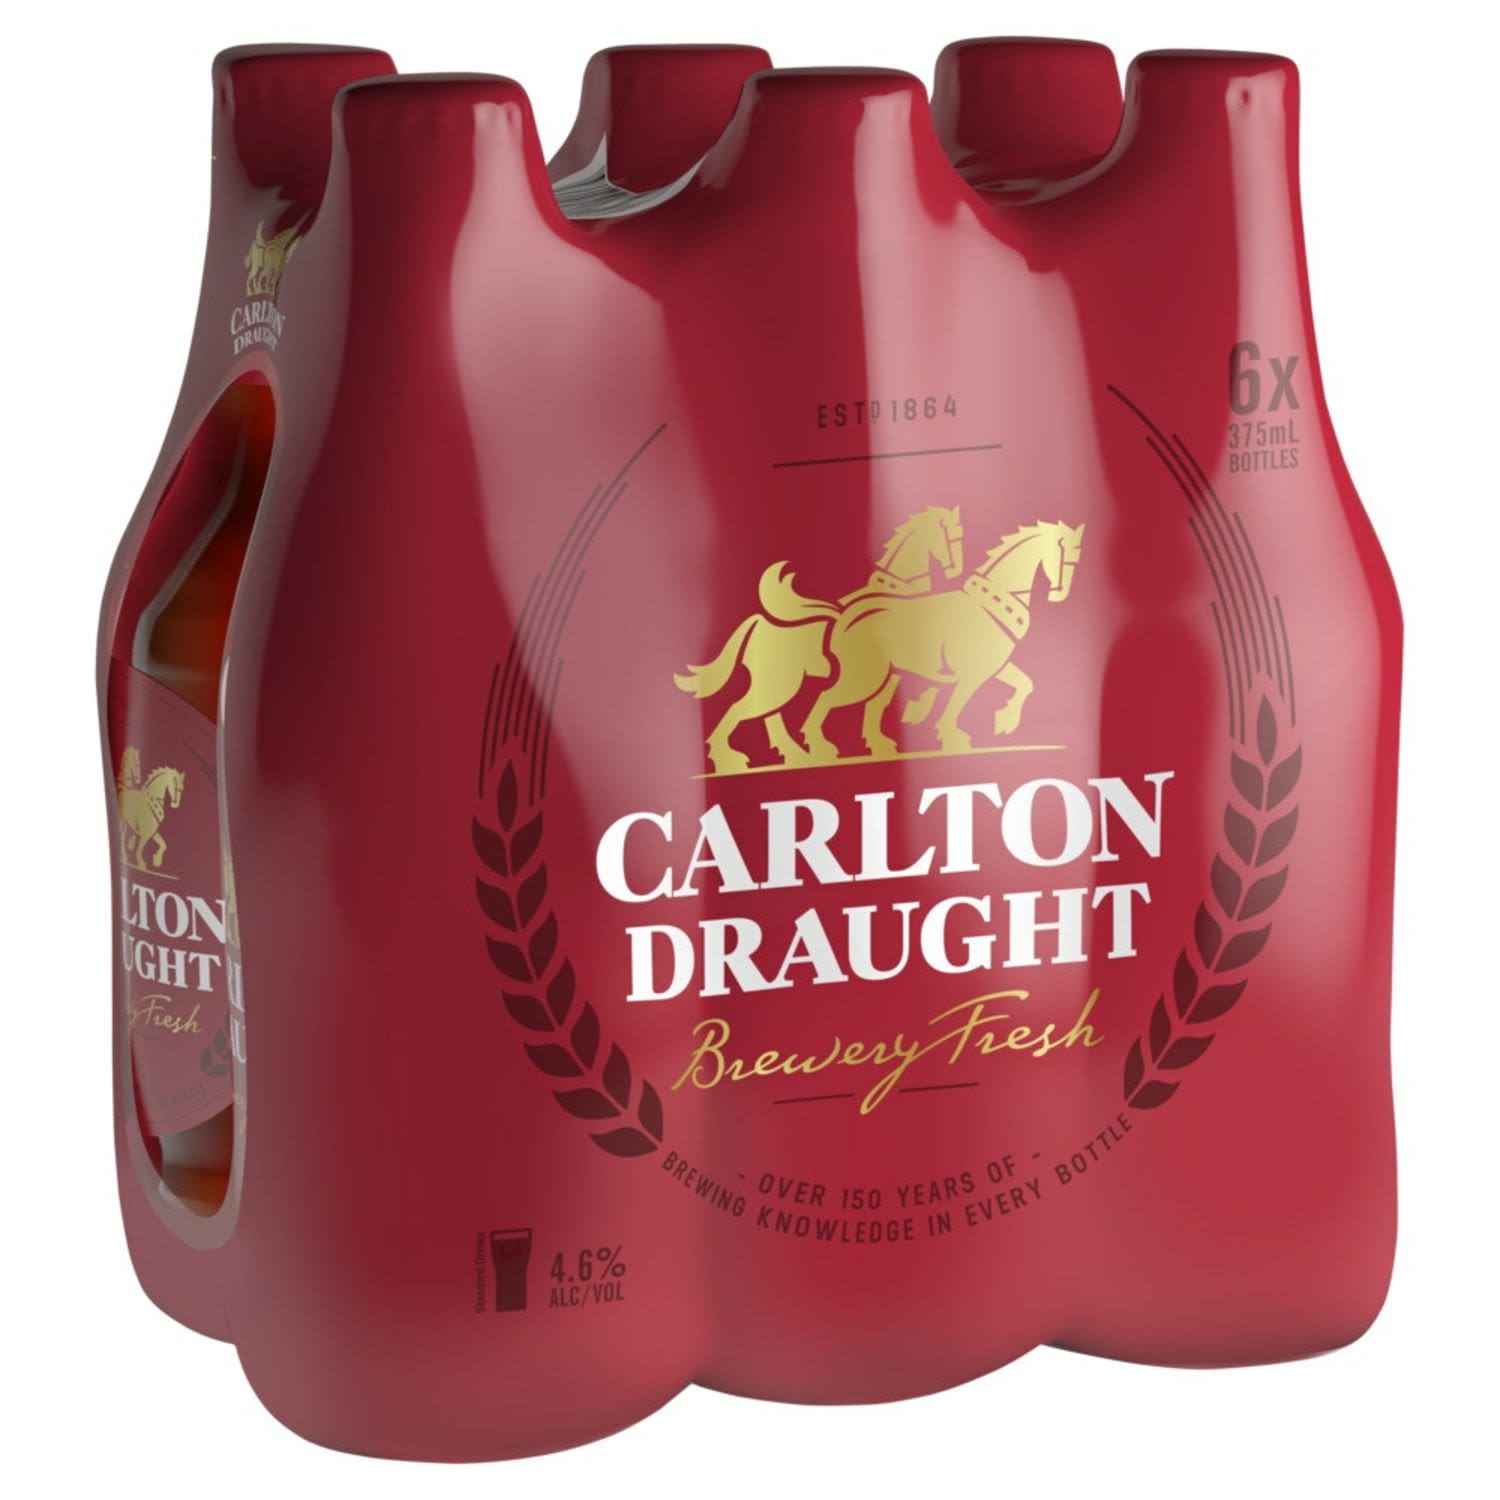 Carlton Draught Bottle 375mL 6 Pack